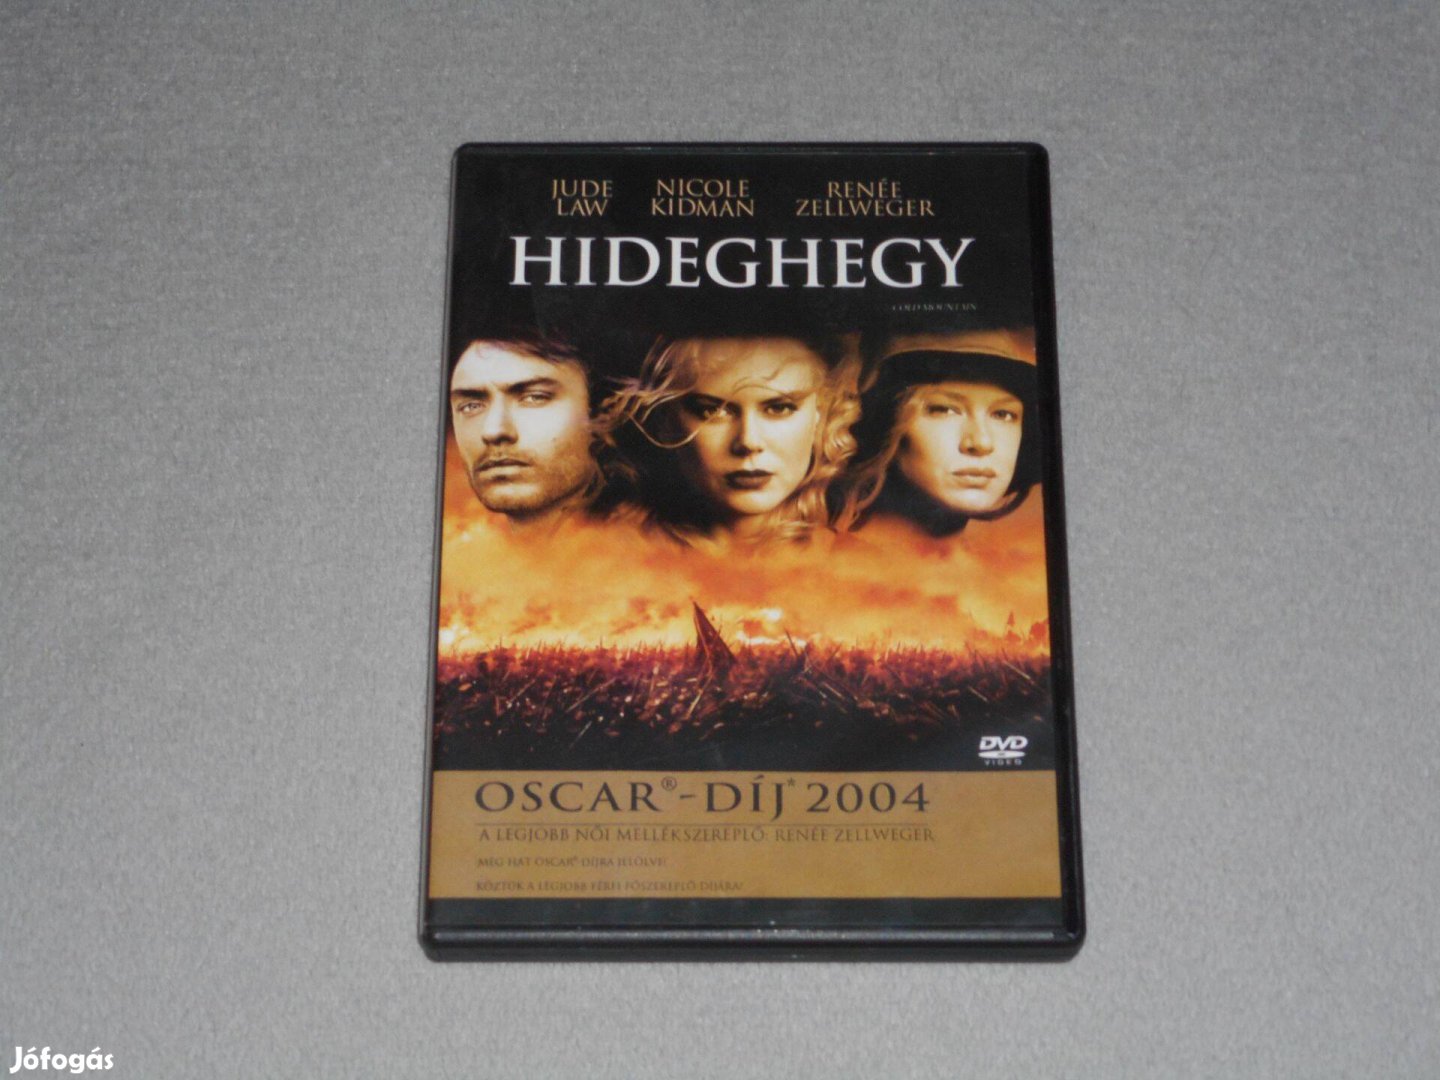 Hideghegy (Jude Law, Nicole Kidman, Renée Zellweger) DVD film, Ritka